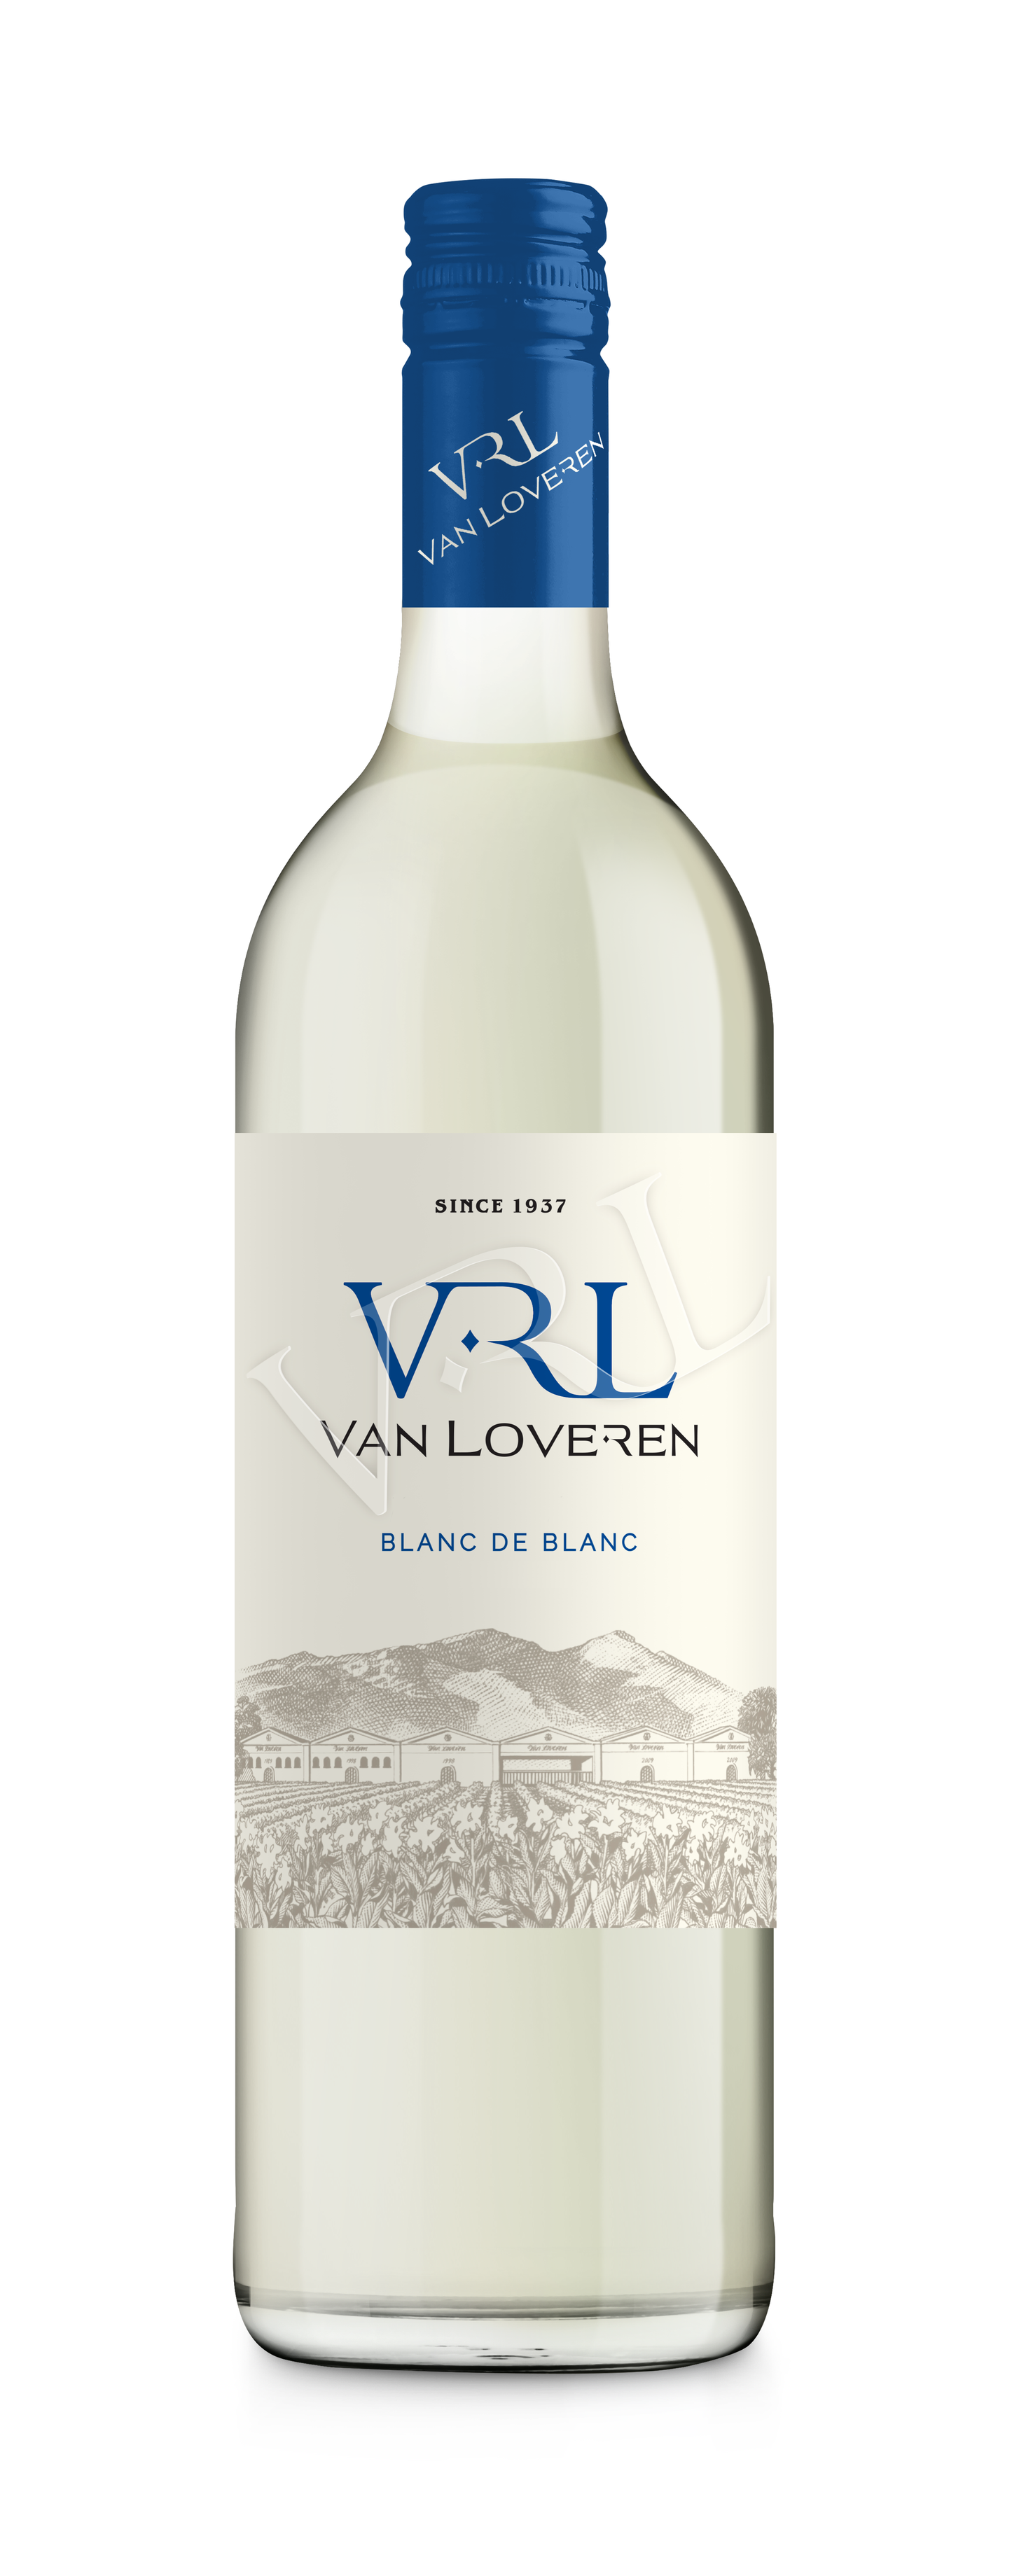 Van Loveren Blanc de Blanc 6 x 750ml